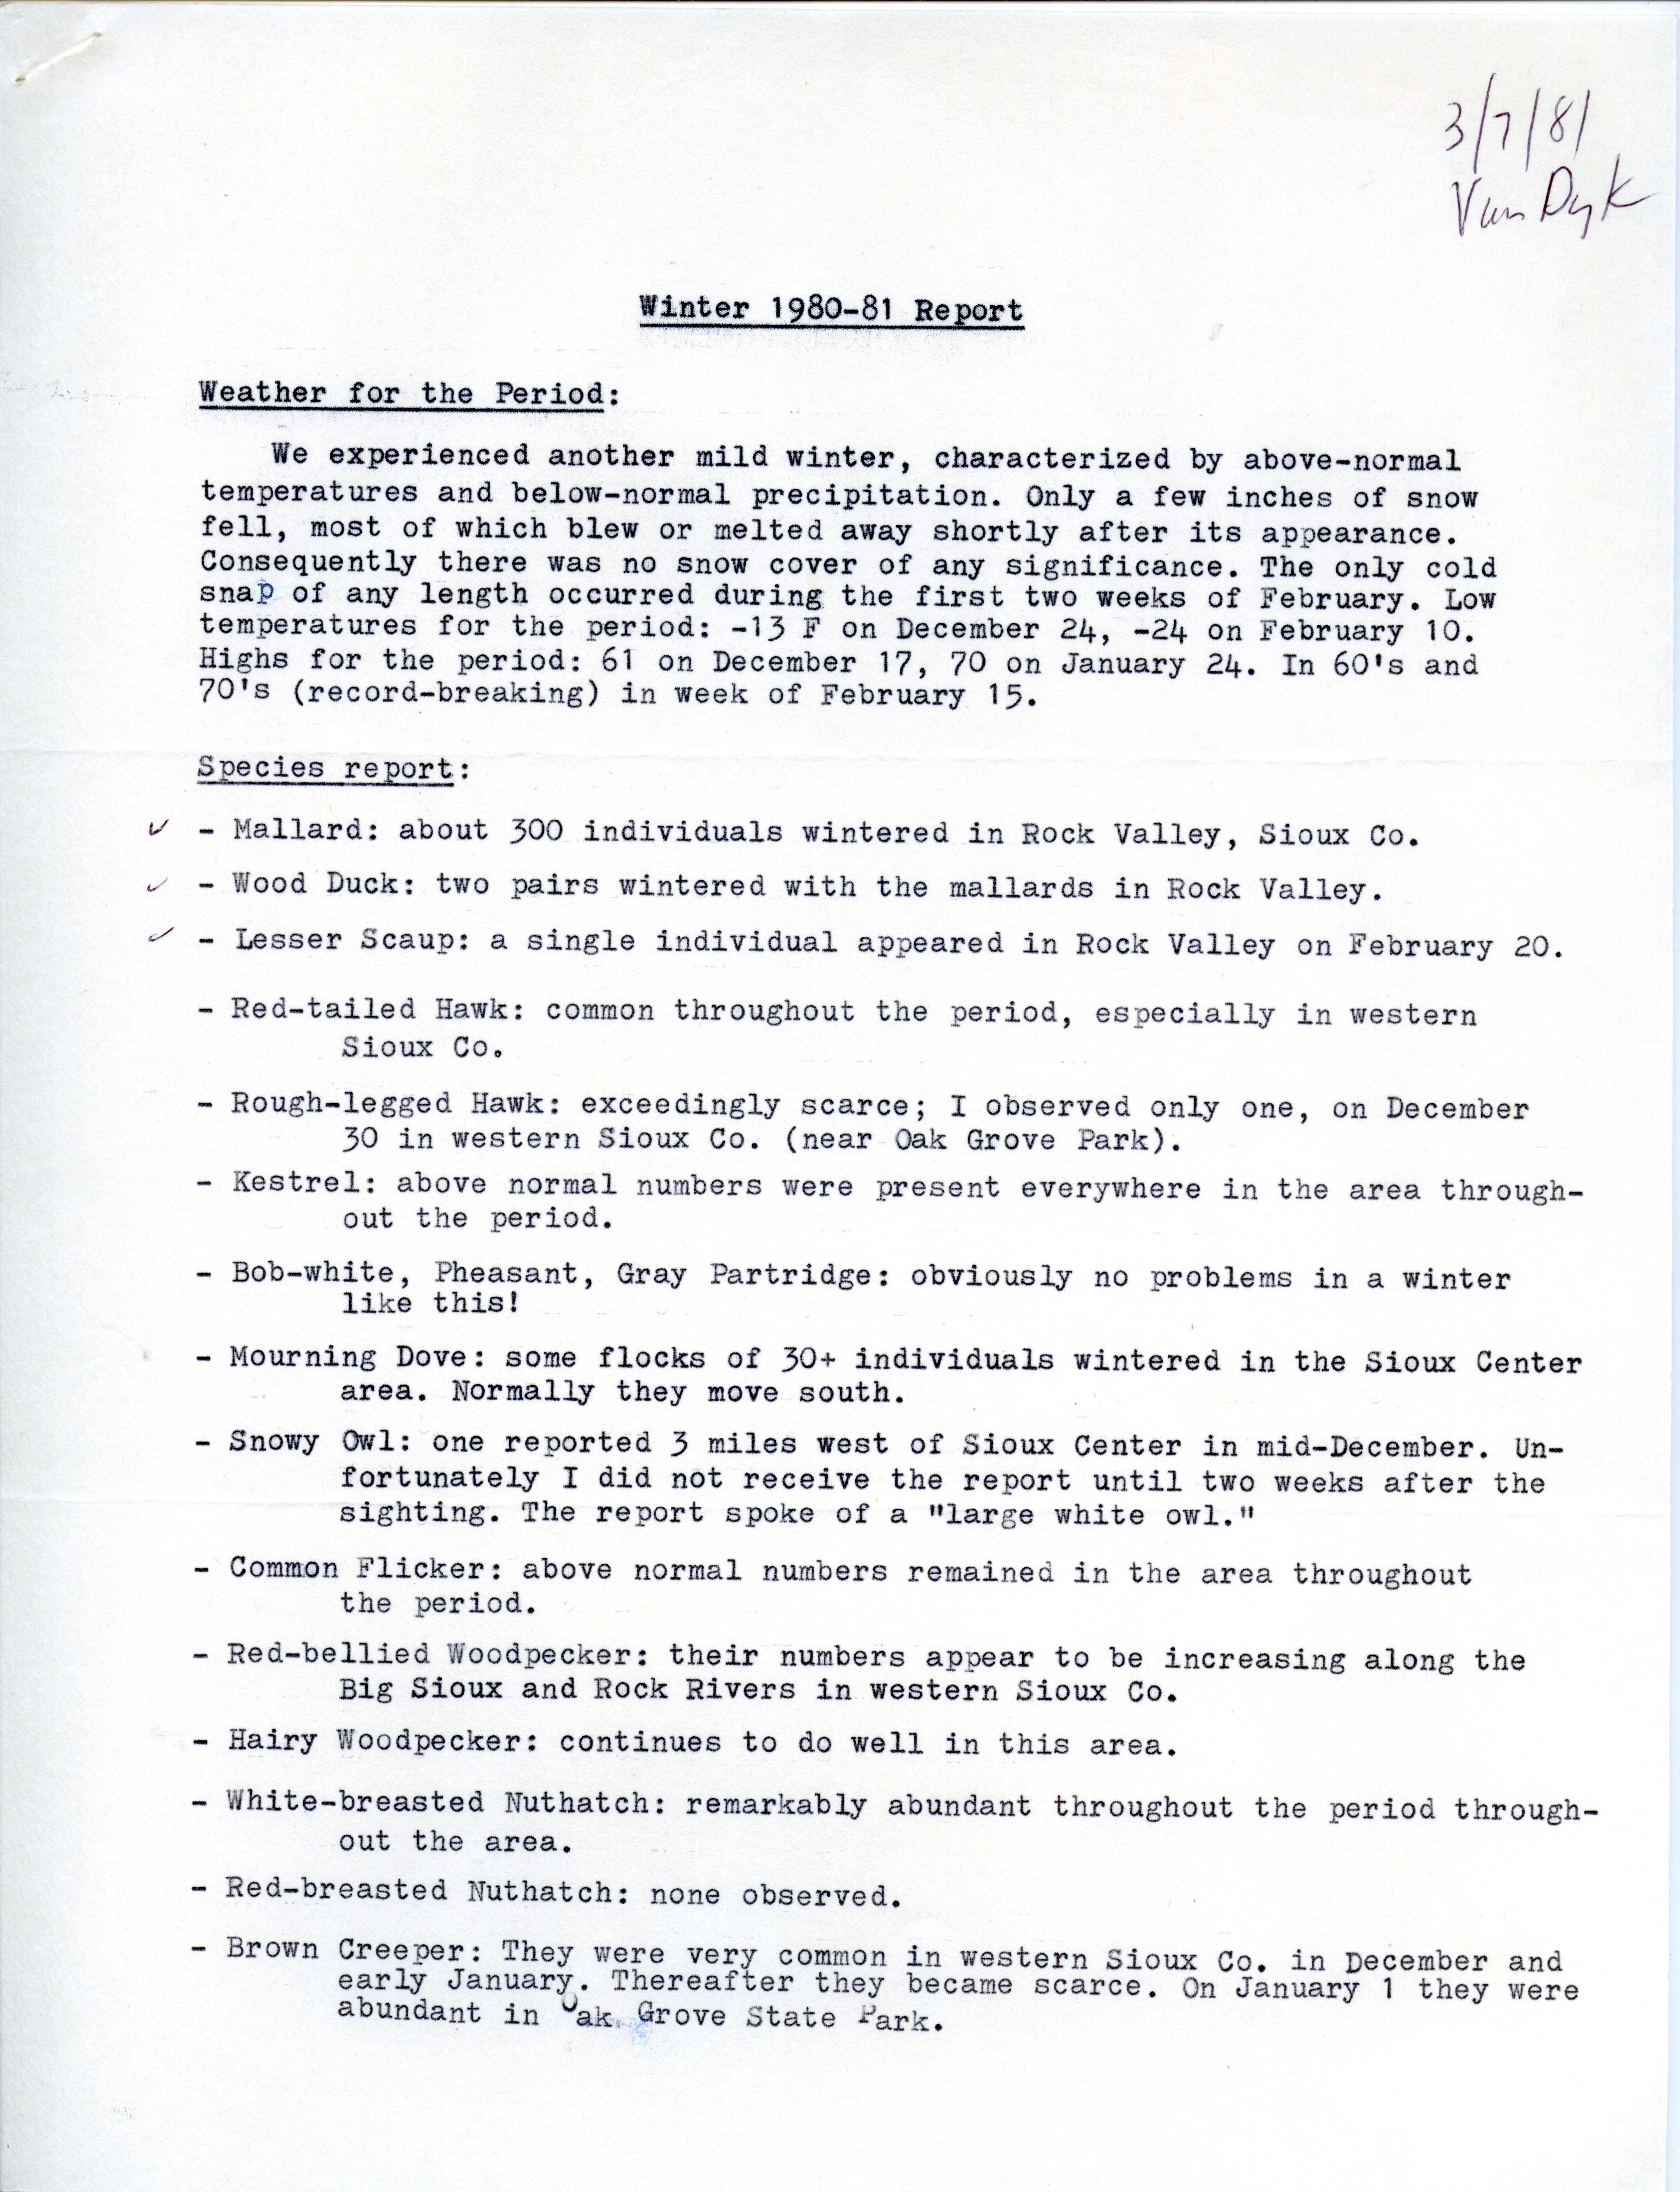 Winter 1980-81 report by John Van Dyk